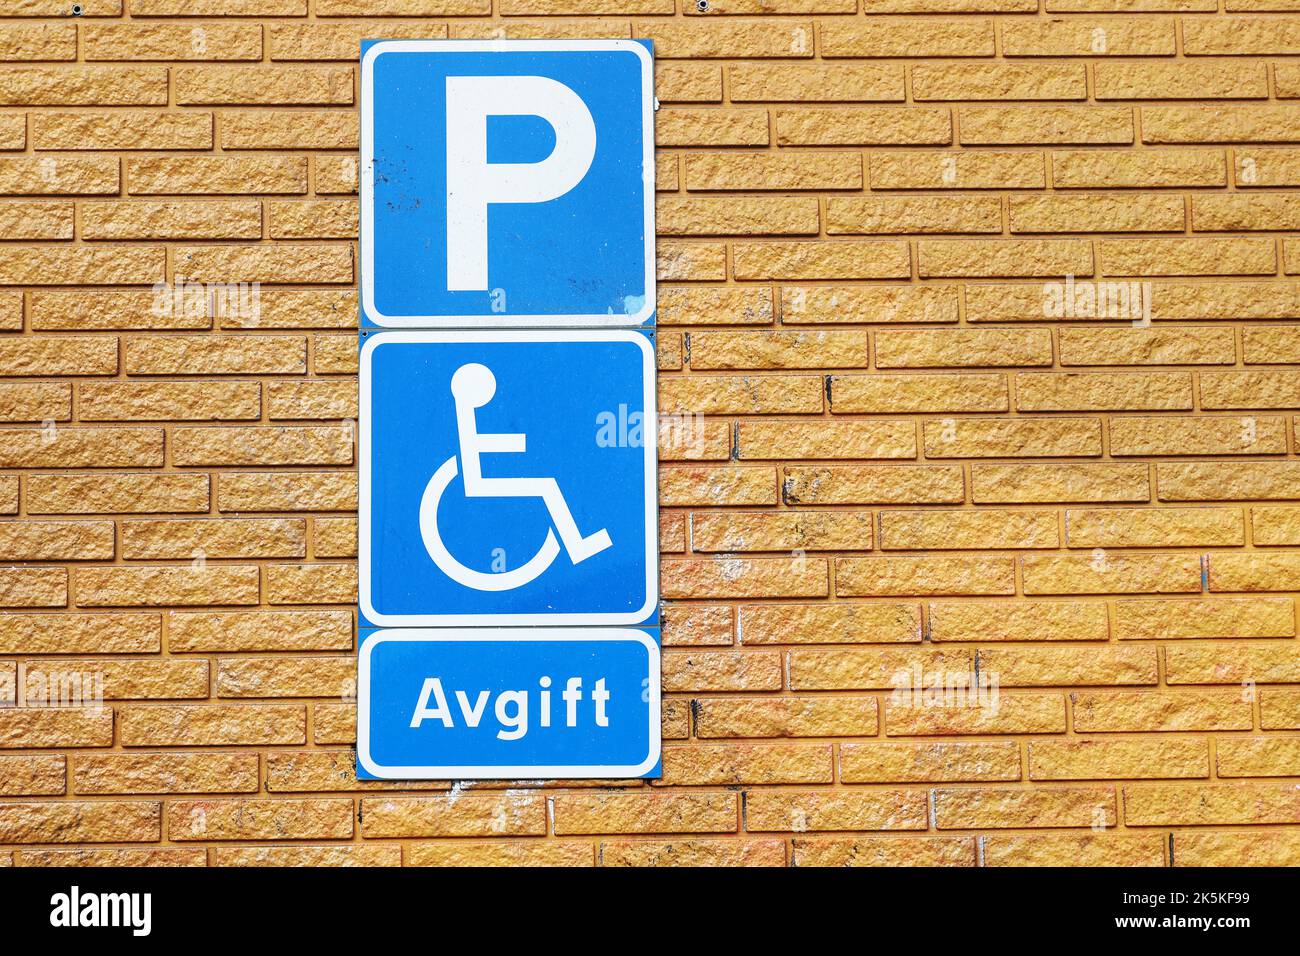 Schwedische Straßenschilder weisen darauf hin, dass das Parken gegen eine Gebühr erlaubt ist, wenn das Fahrzeug eine Behindertengenehmigung besitzt. Stockfoto